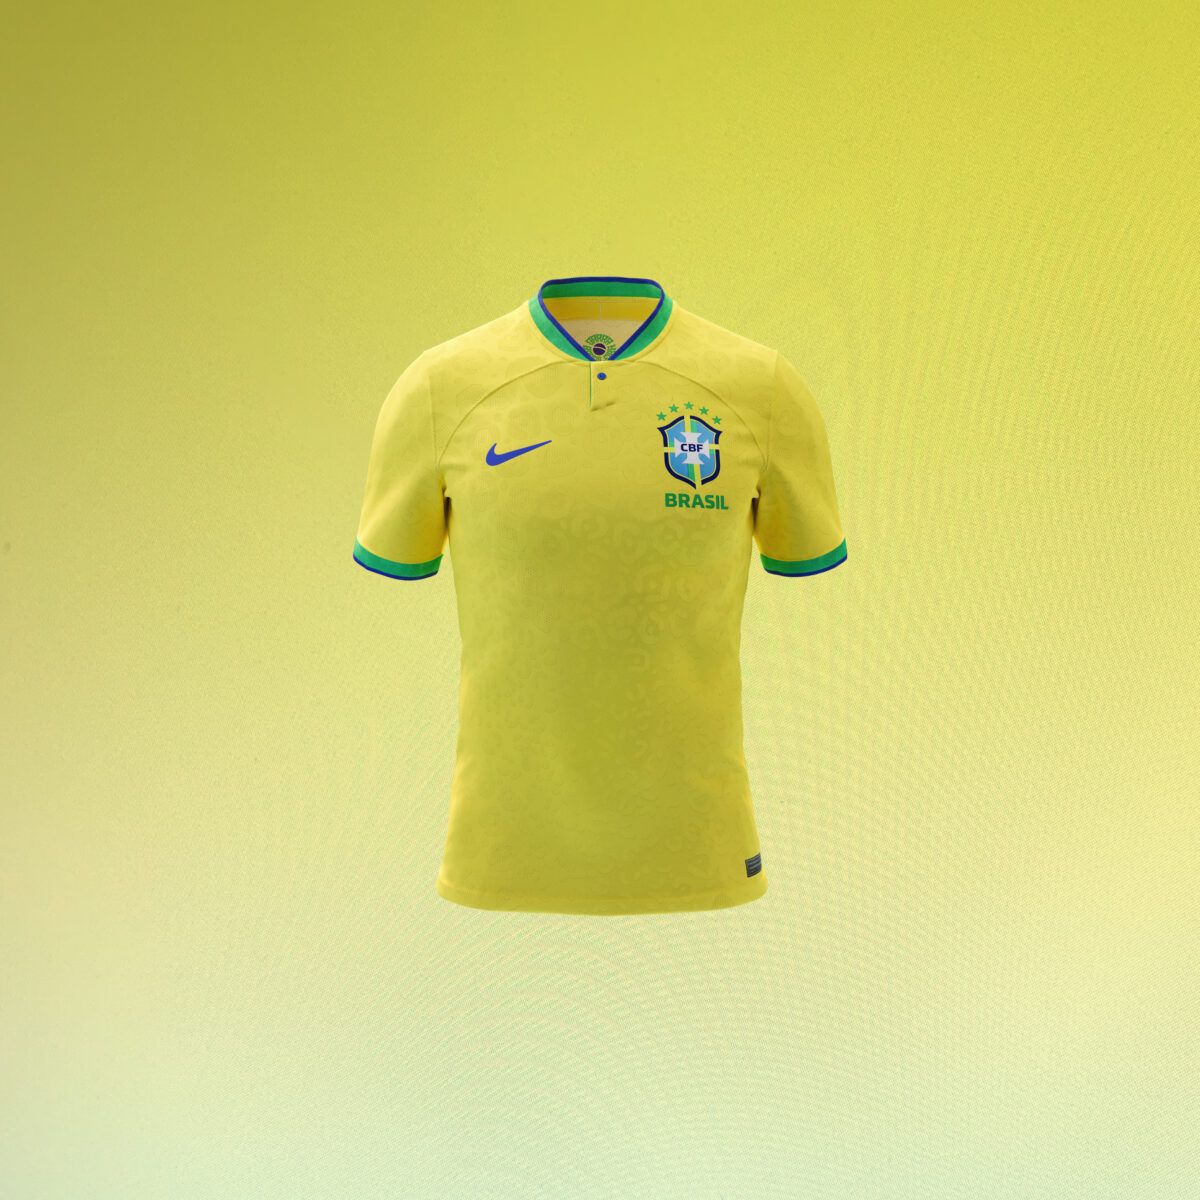 Nike e CBF revelam nova camisa da selecao brasileira de futebol